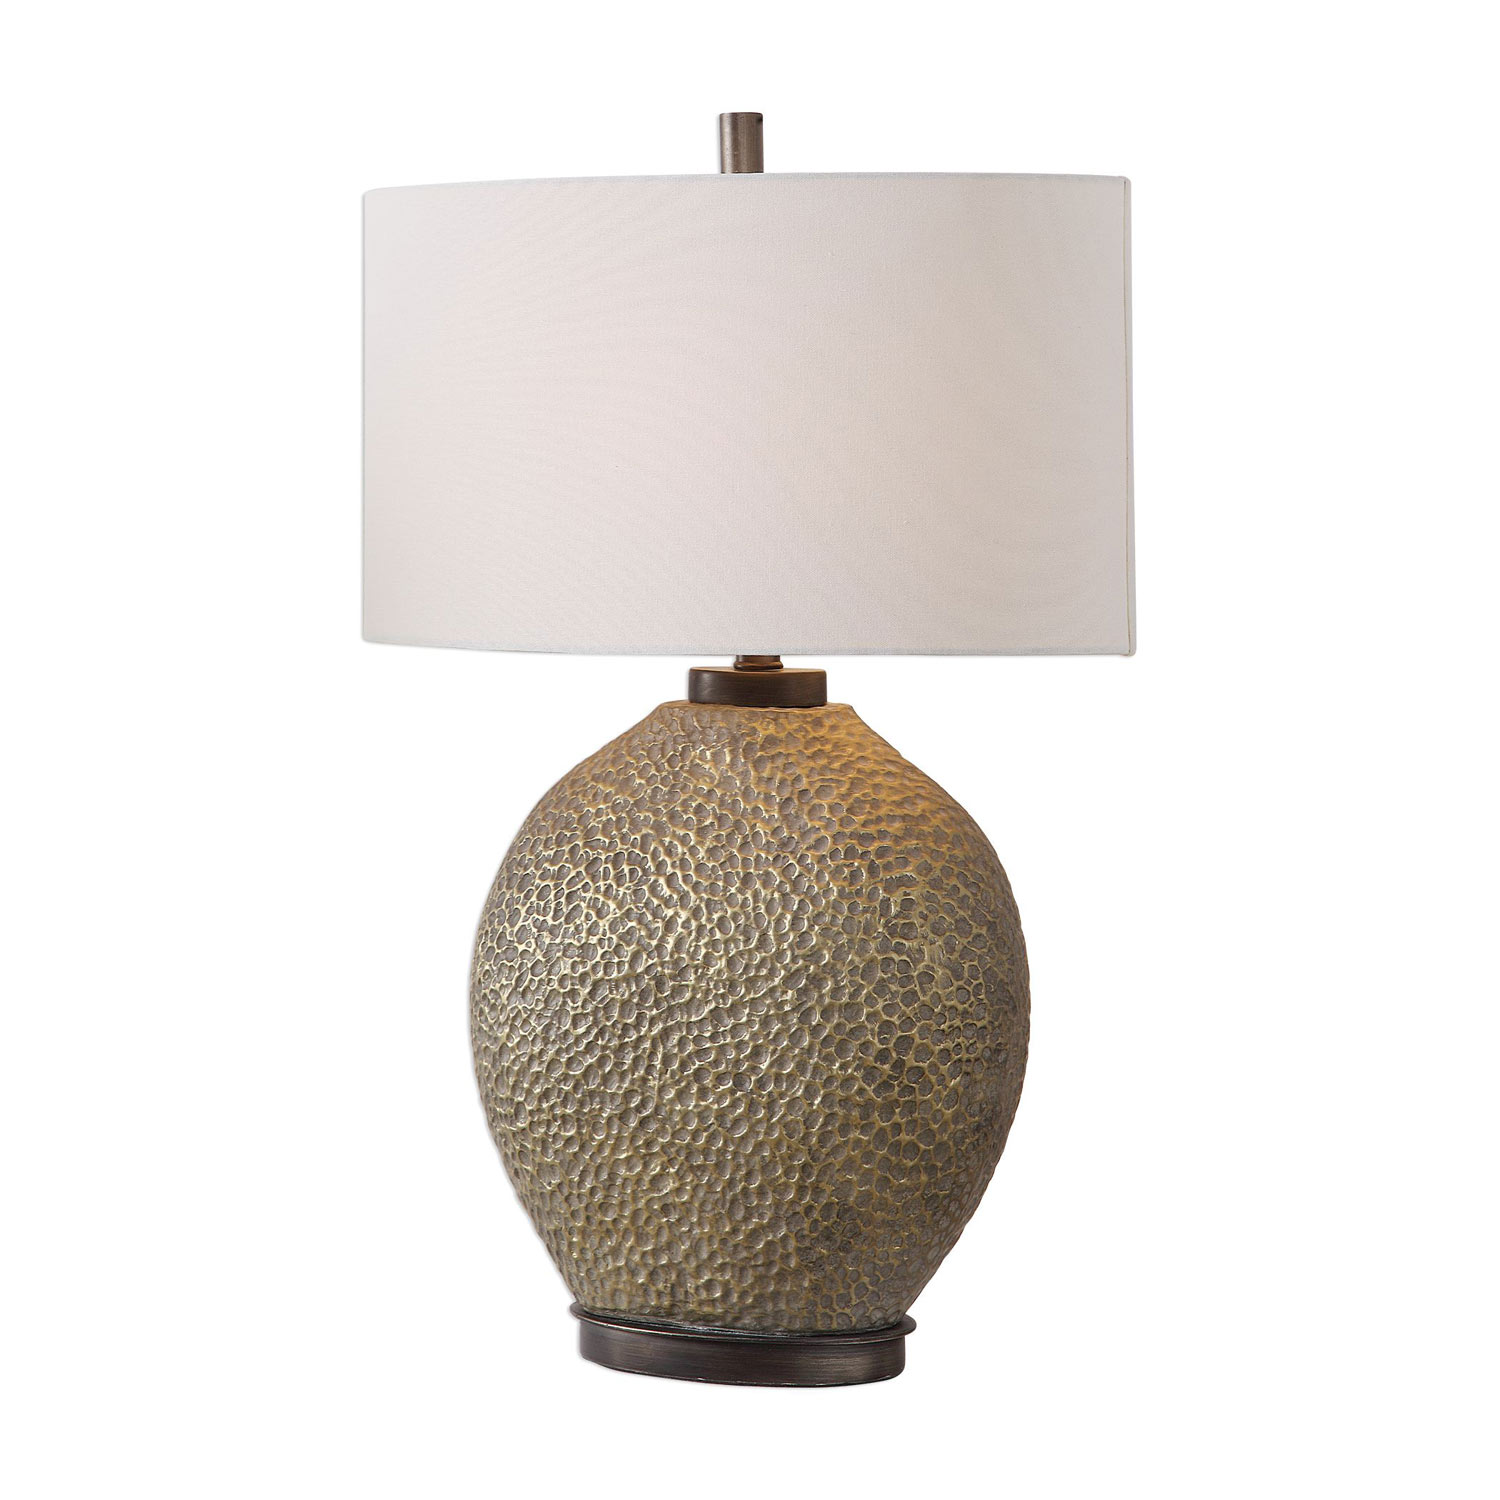 Uttermost Aker Table Lamp - Golden Bronze